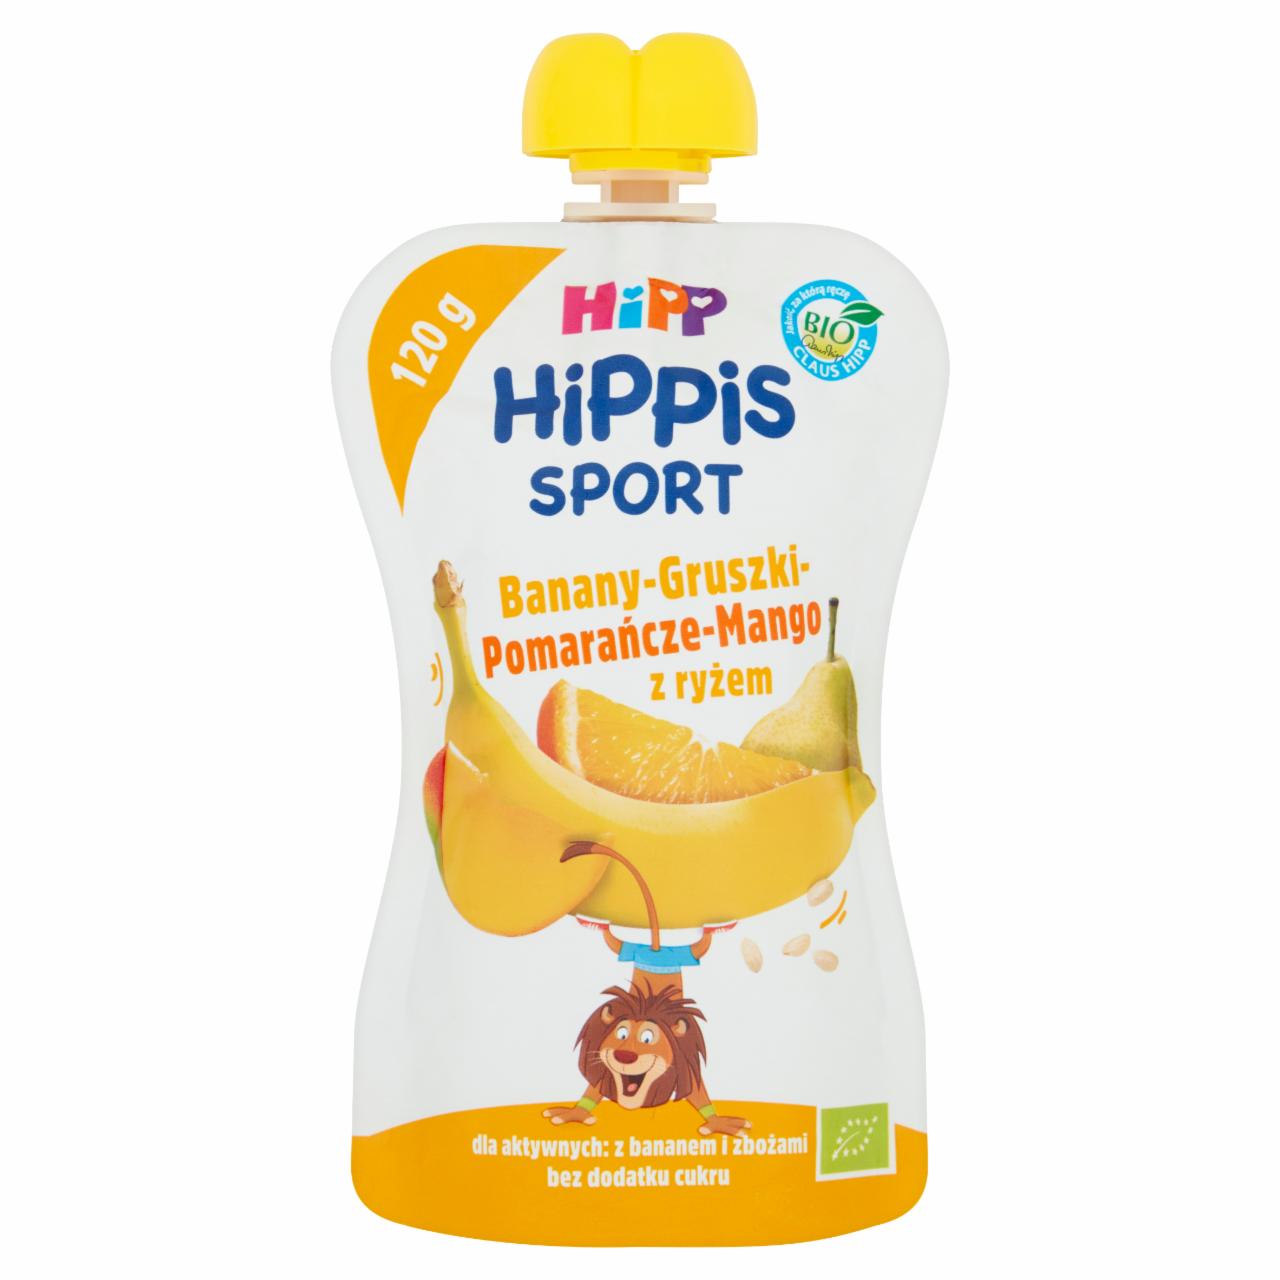 Zdjęcia - HiPP BIO Sport Mus owocowy po 1. roku banany-gruszki-pomarańcze-mango z ryżem 120 ml